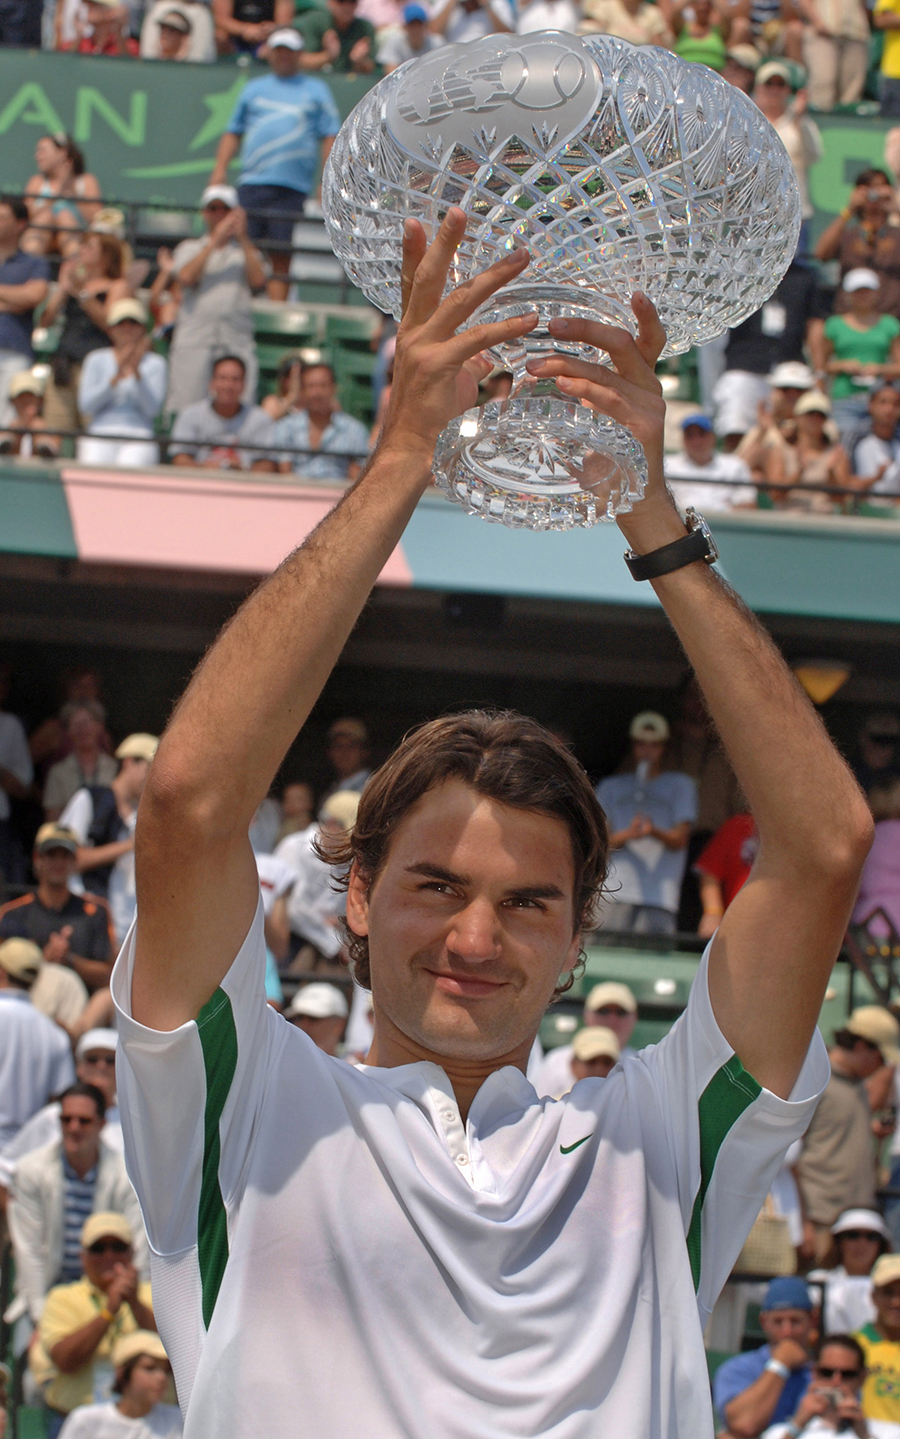 Roger Federer lifts the trophy after beating Ivan Ljubicic